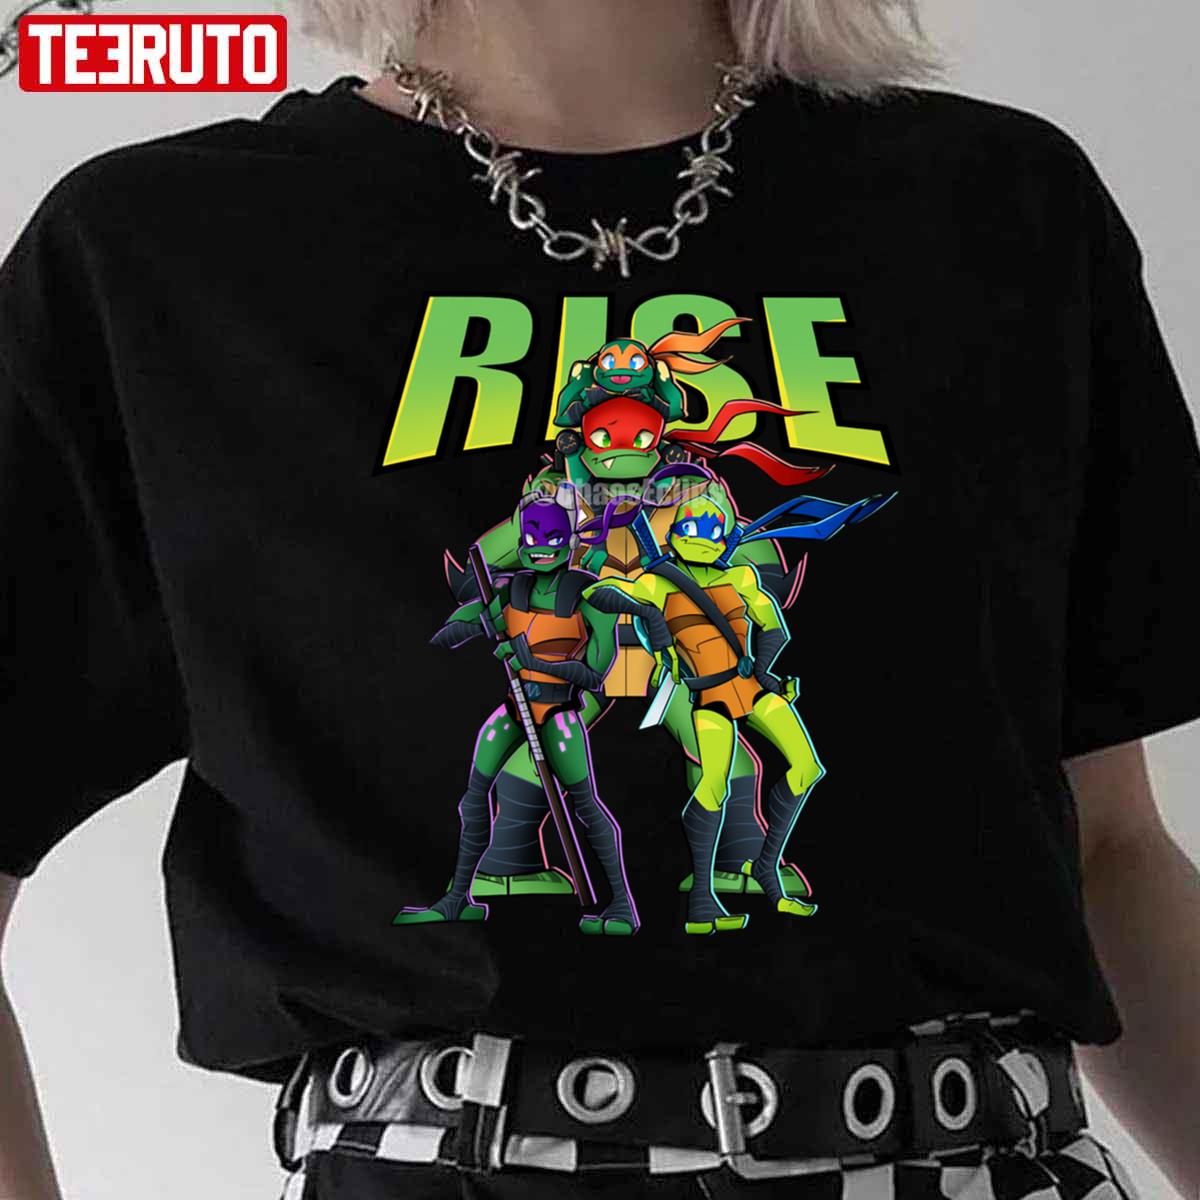 Rise Of The Teenage Mutant Ninja Turtles Unisex T-Shirt